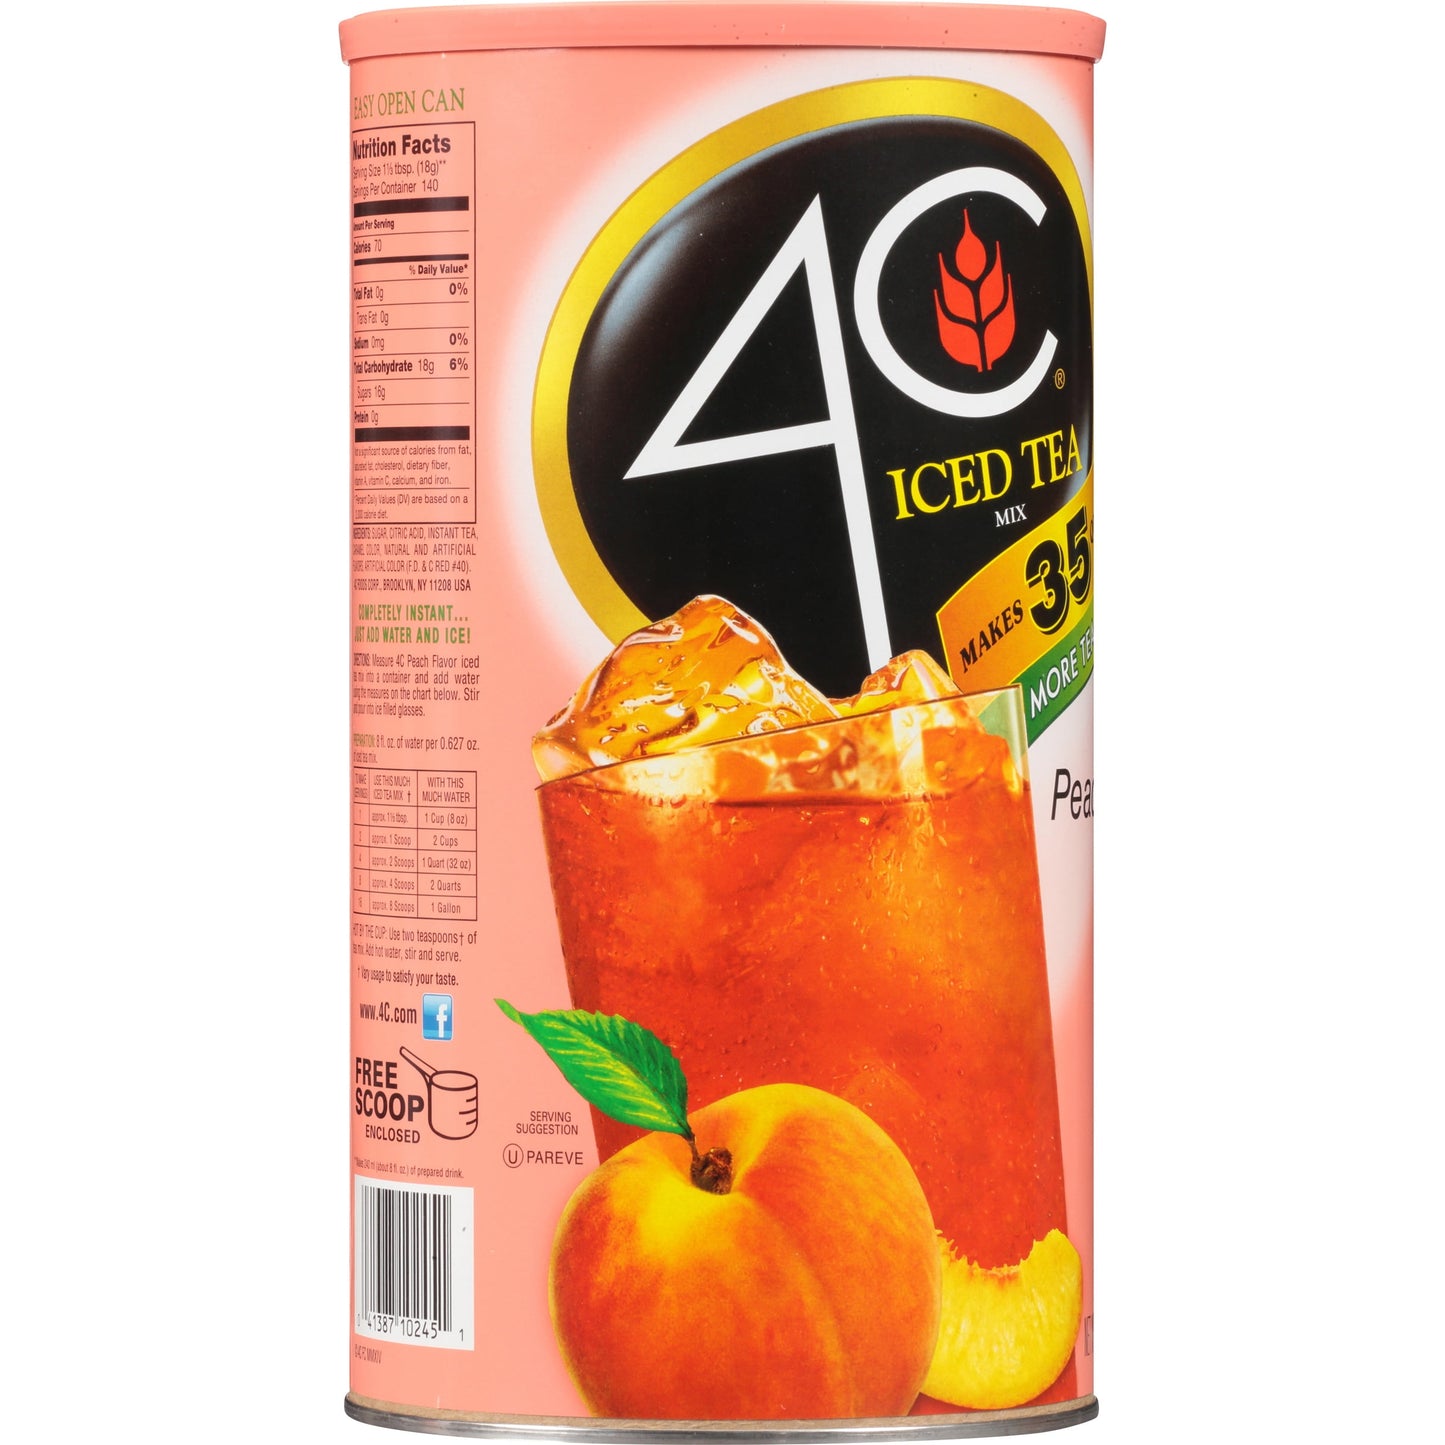 ® Peach Iced Tea Mix 82.6 Oz. Canister